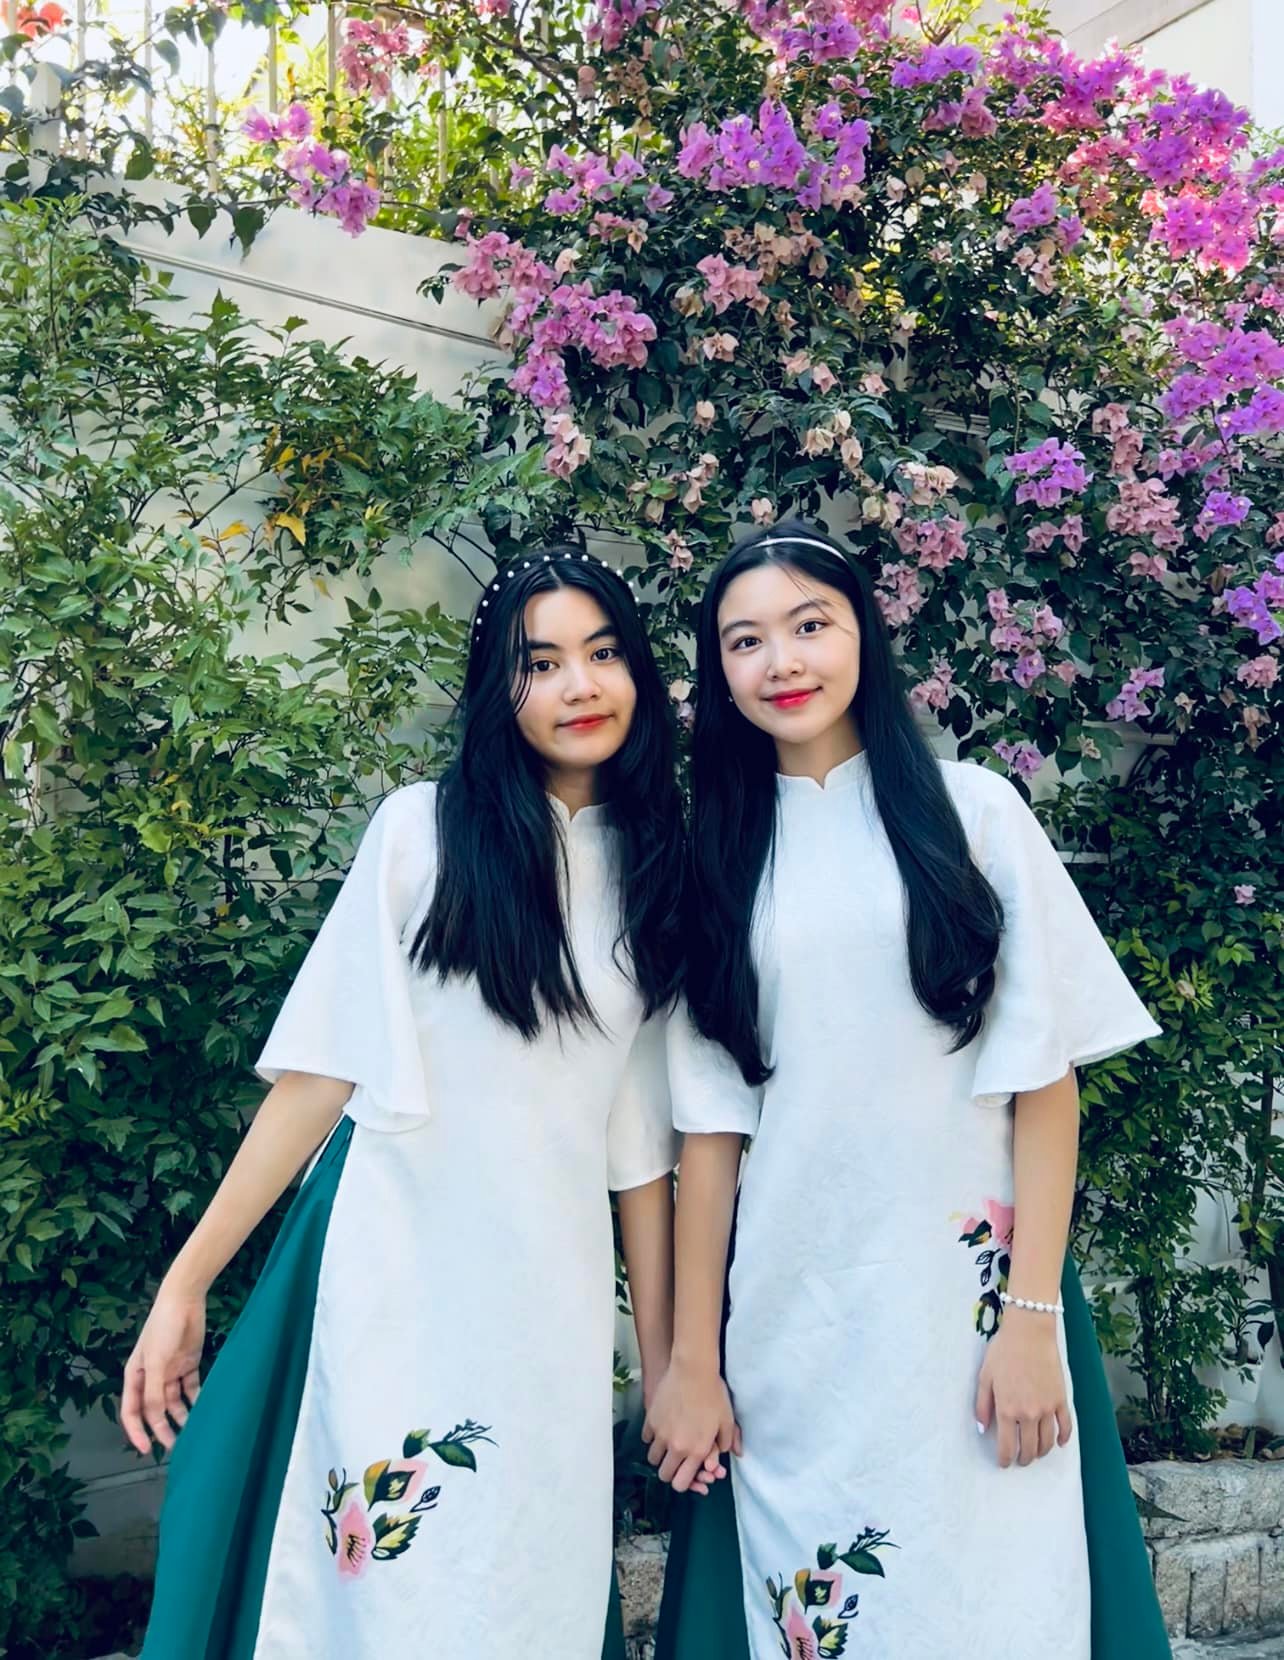 Áo dài là trang phục truyền thống của người Việt Nam, mang đầy nét đẹp trang nhã và tinh tế. Hãy cùng ngắm những bức ảnh về áo dài, khám phá sự thanh lịch trong từng đường nét của trang phục này.